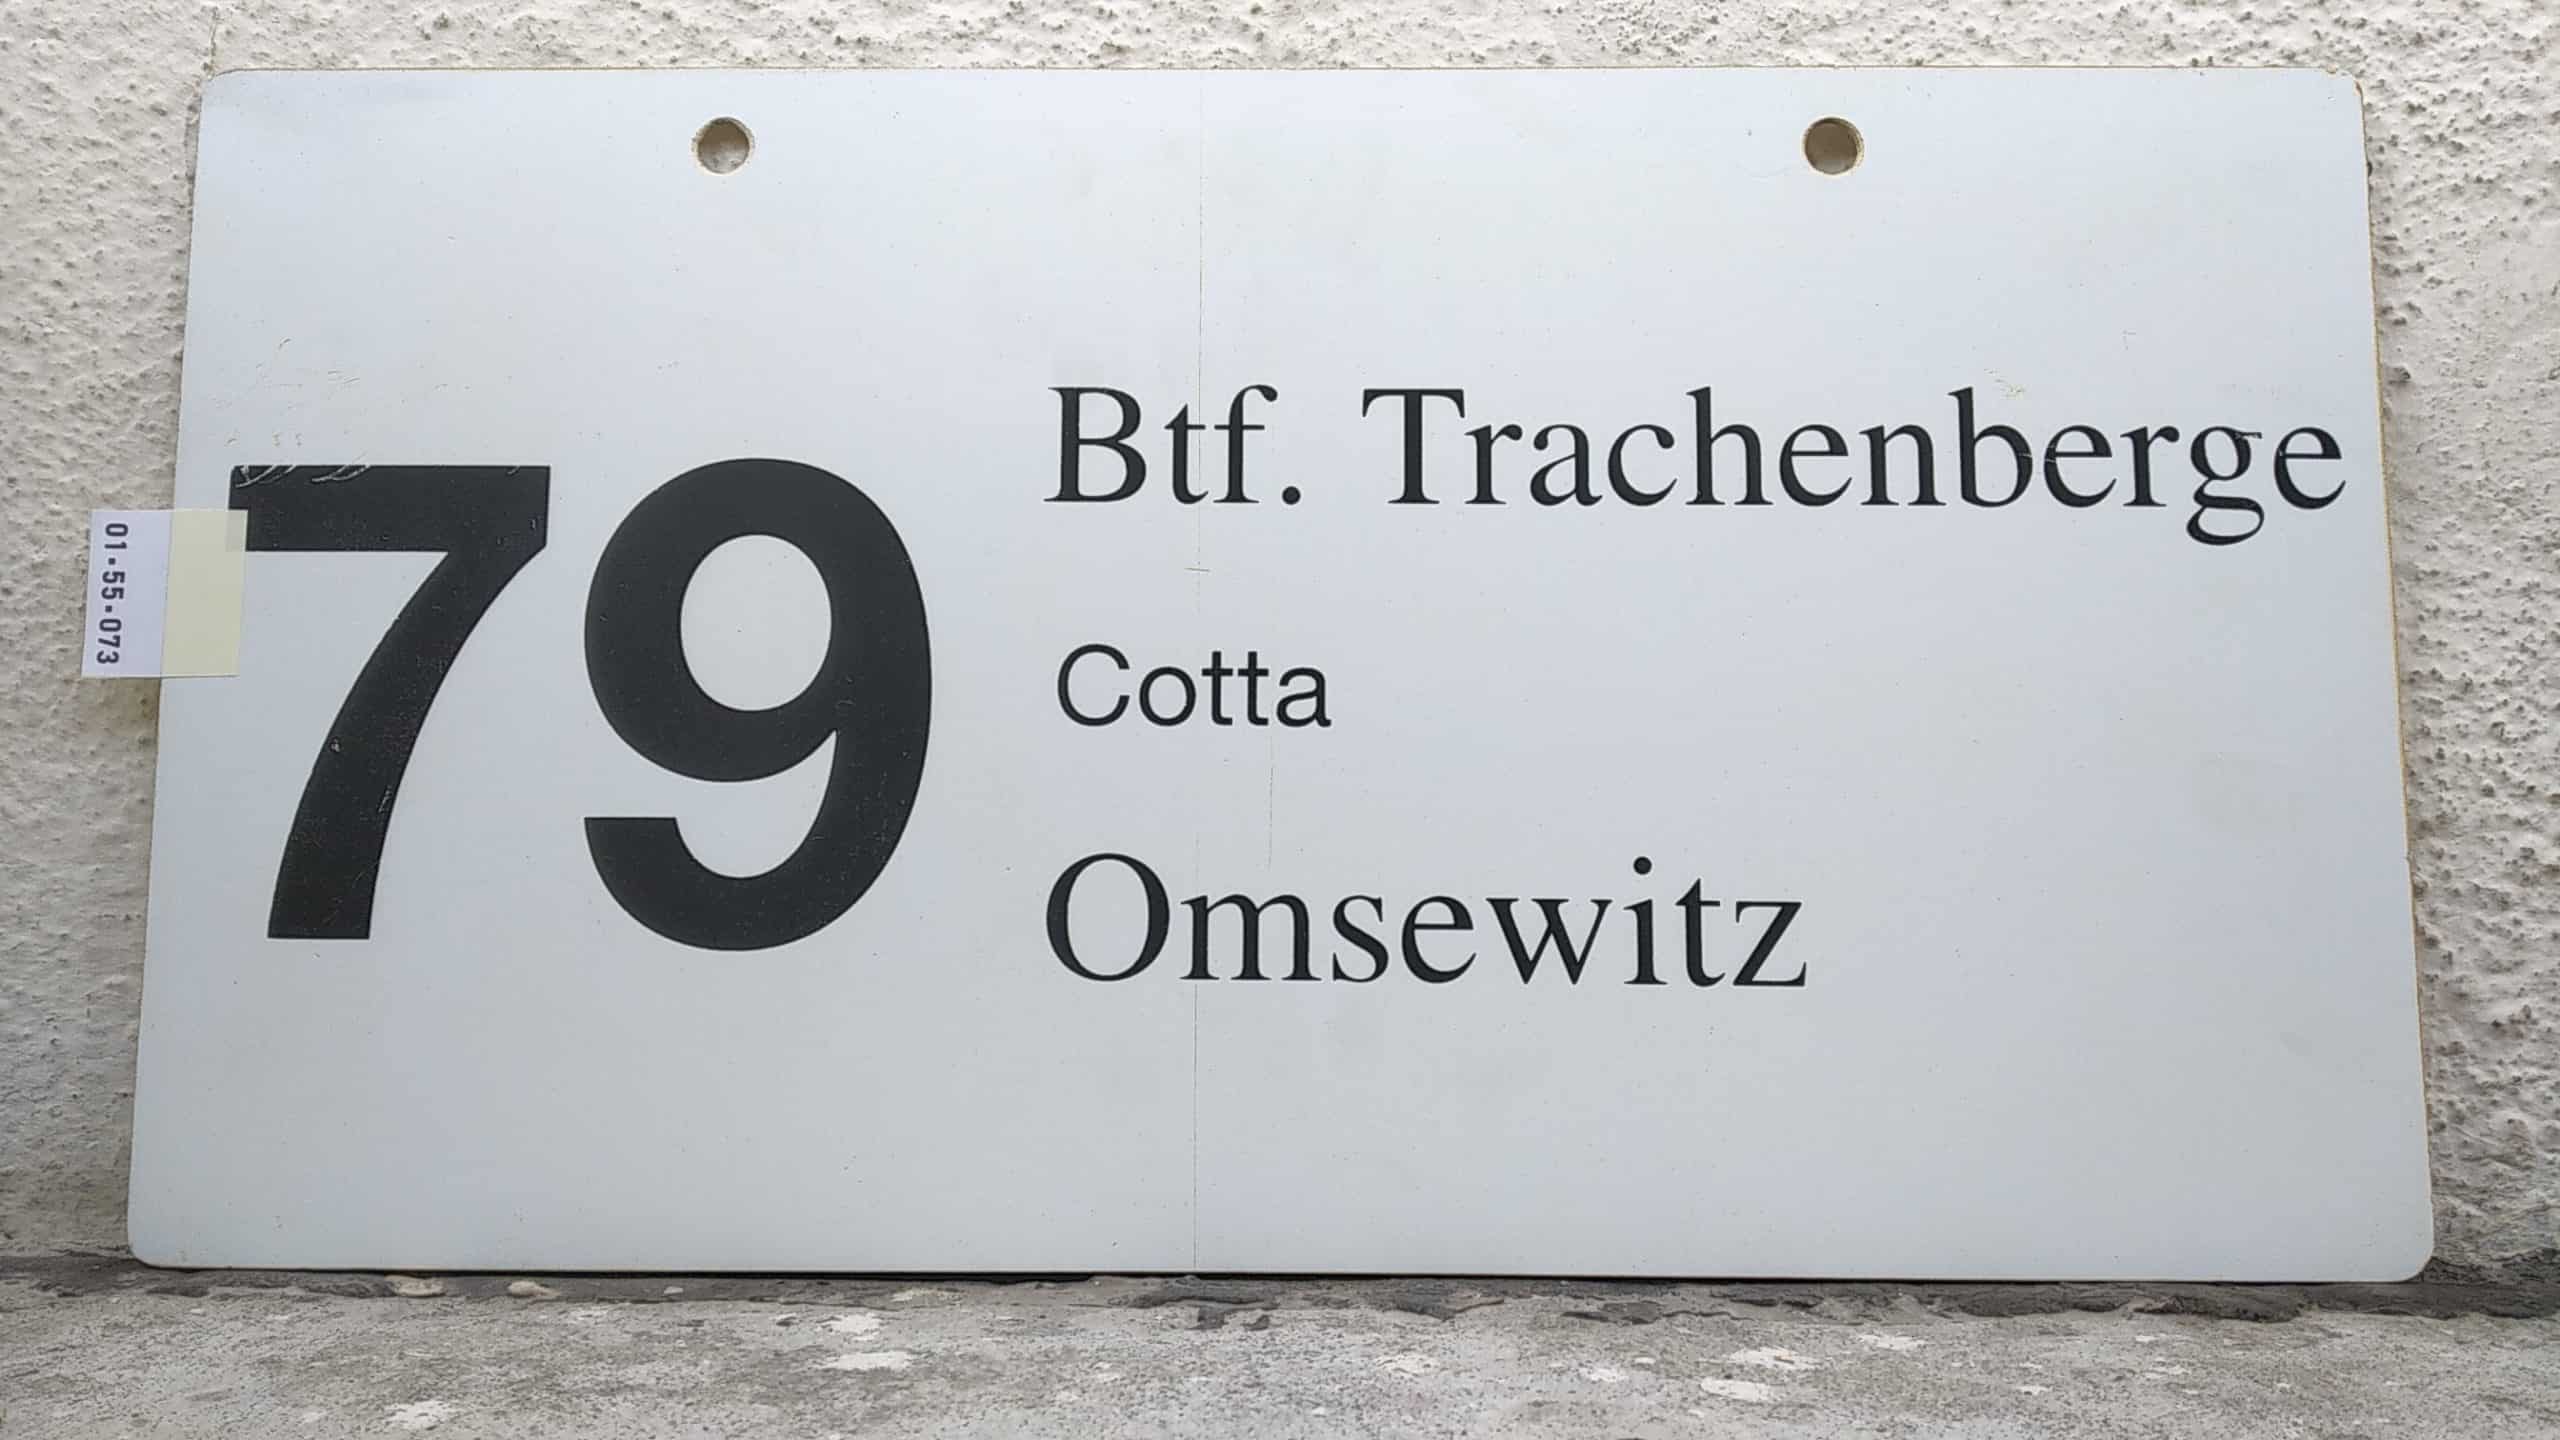 Ein seltenes Bus-Linienschild aus Dresden der Linie 79 von Btf. Trachenberge nach Omsewitz #1